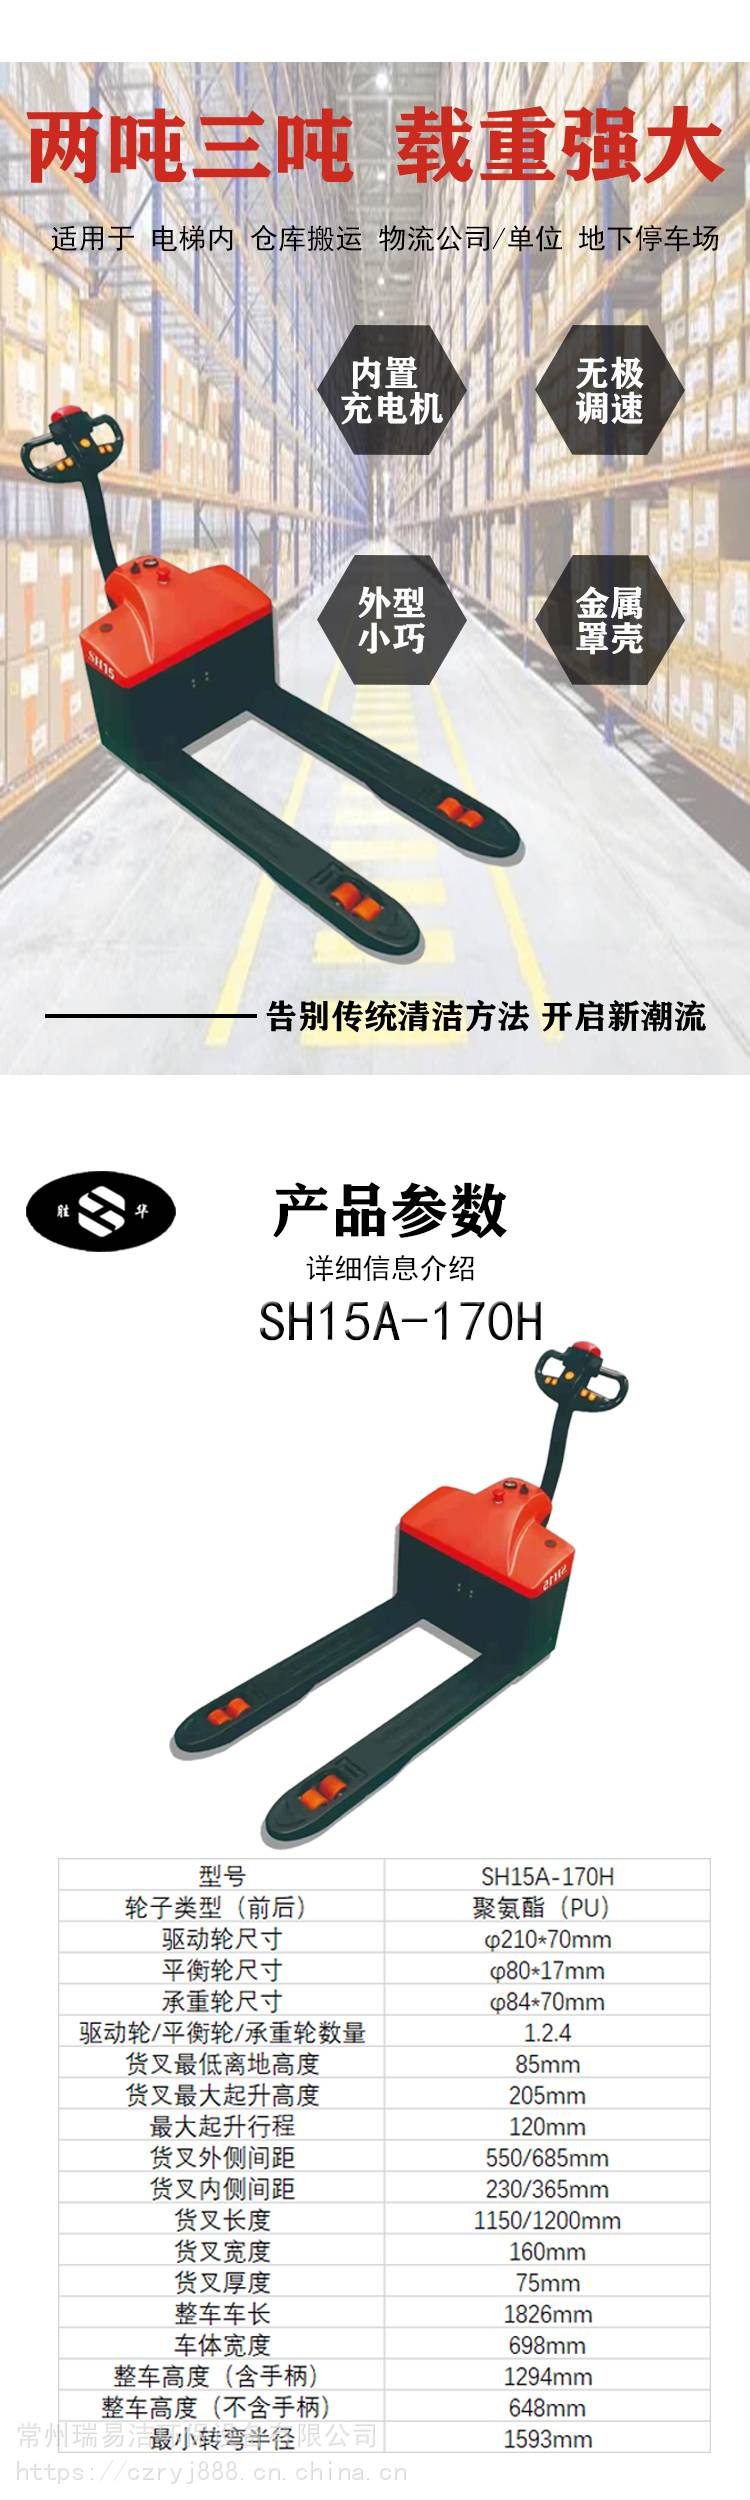 胜华SH-1900A三轮驾驶式电动扫地车